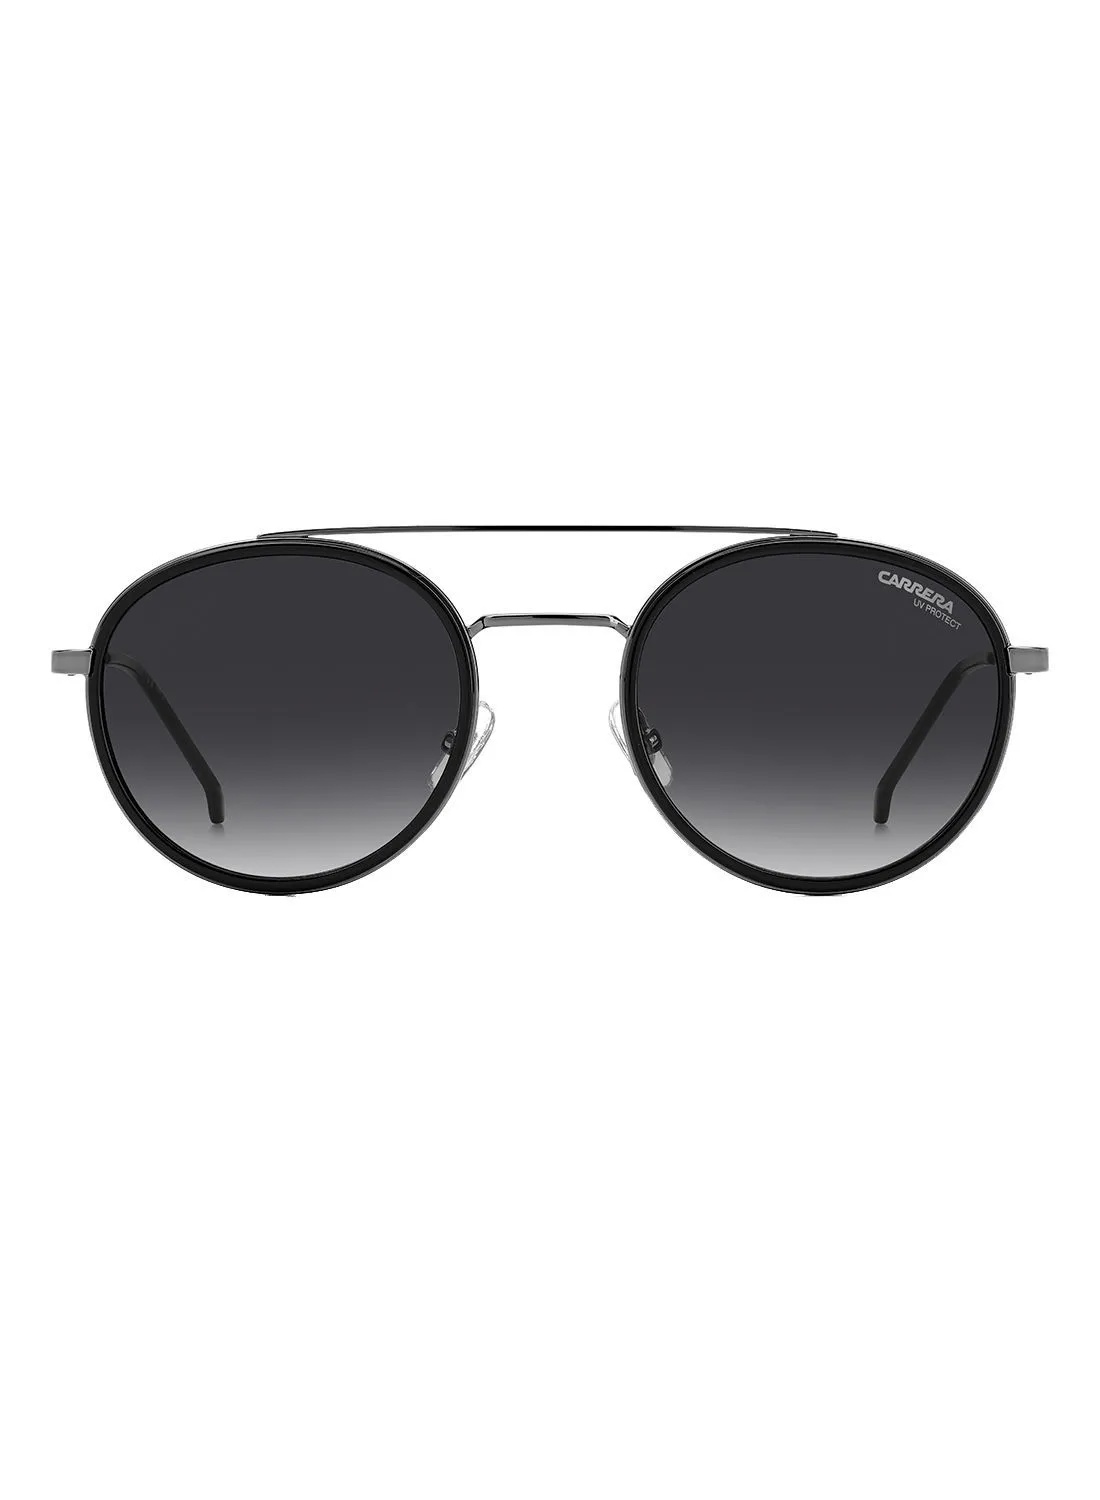 CARRERA Round / Oval Sunglasses CARRERA 2028T/S BLACK 50